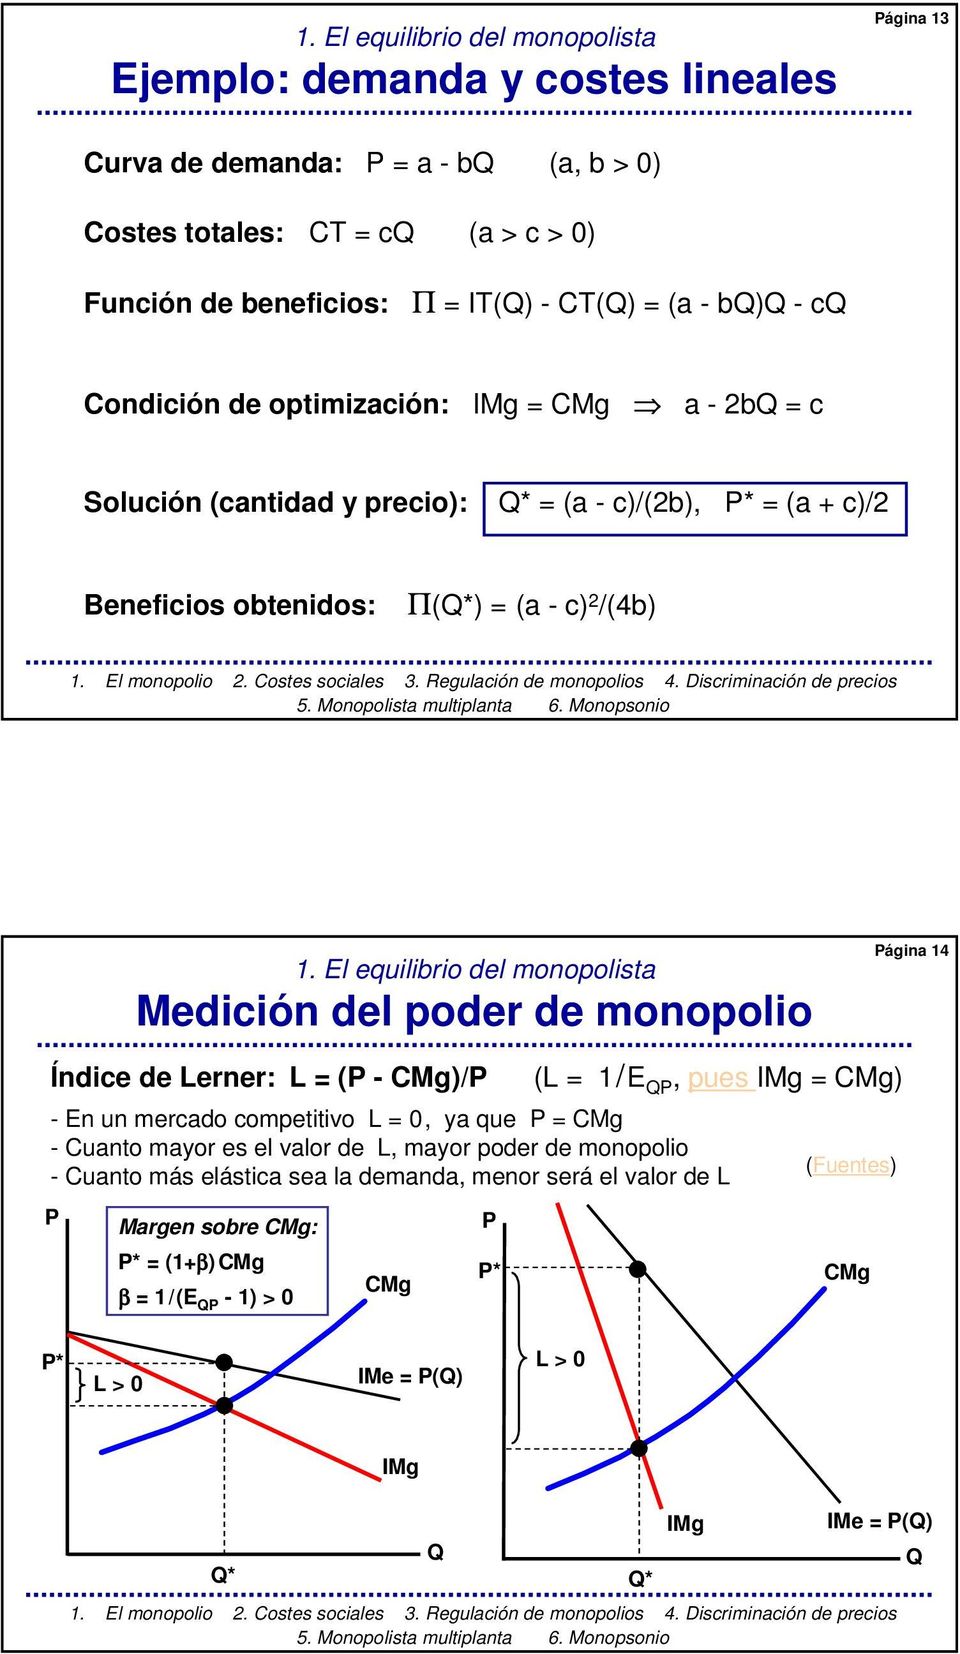 El equilibrio del monopolista Medición del poder de monopolio Página 14 Índice de Lerner: L = (P - CMg)/P (L = 1/E P, pues IMg = CMg) - En un mercado competitivo L = 0, ya que P = CMg - Cuanto